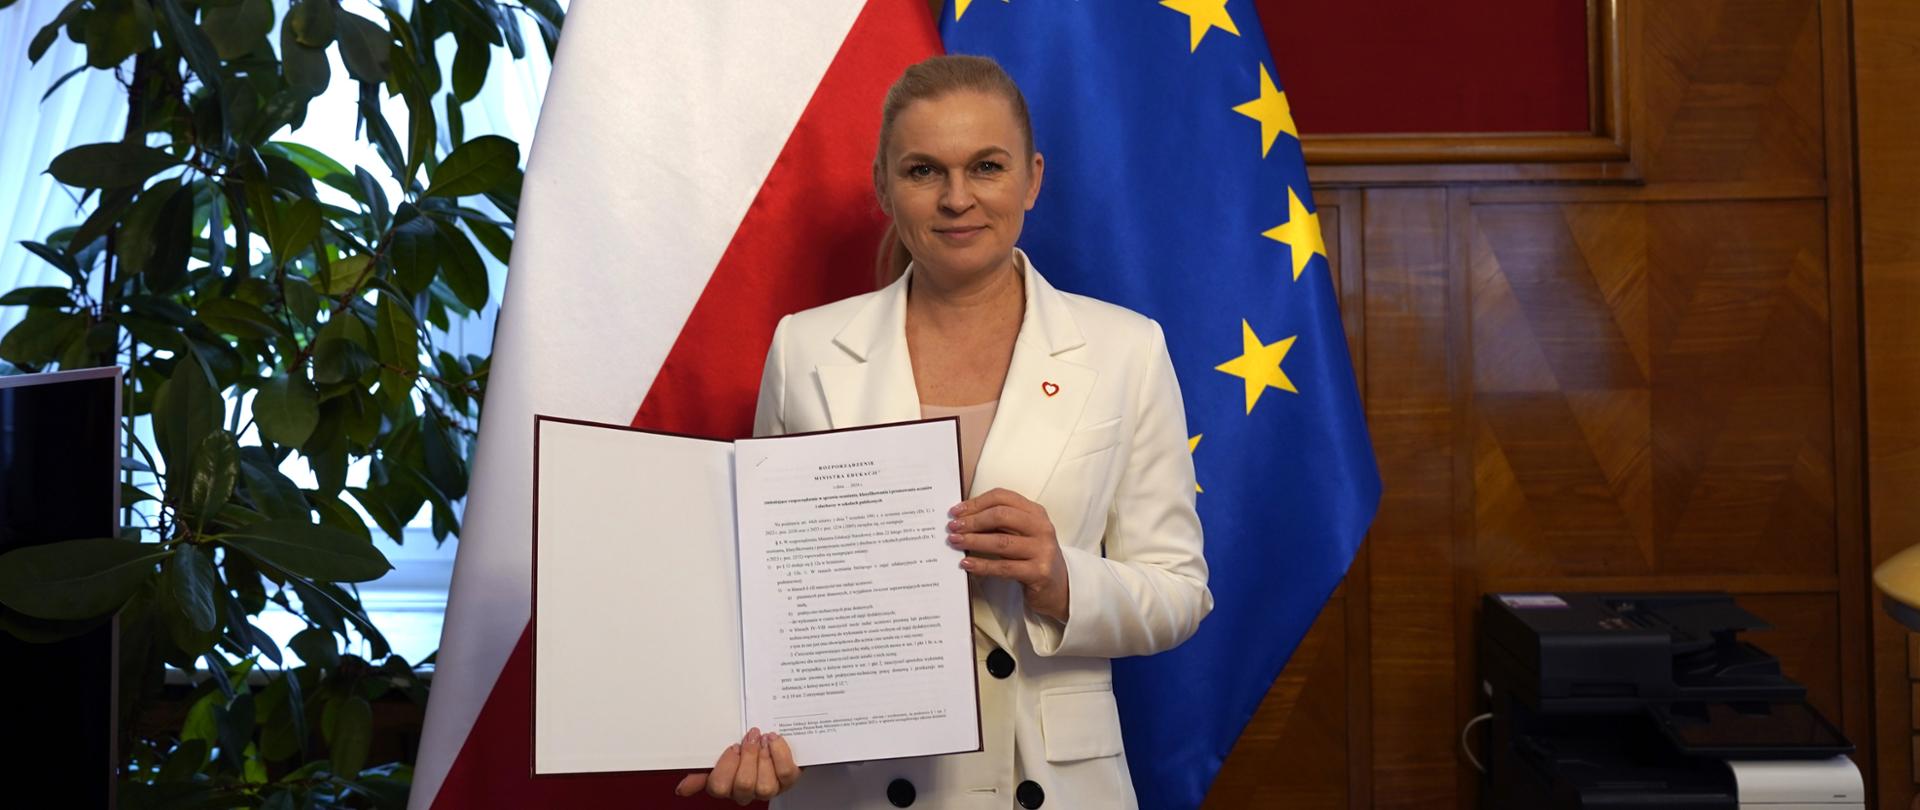 Minister Barbara Nowacka stoi na tle flagi Polski i Unii Europejskiej. W ręku trzyma otwartą teczkę, w której znajduje się podpisane rozporządzenie o pracach domowych. W tle na ścianie w drewnianej ramie na czerwonym tle wisi orzeł, symbol Polski. 